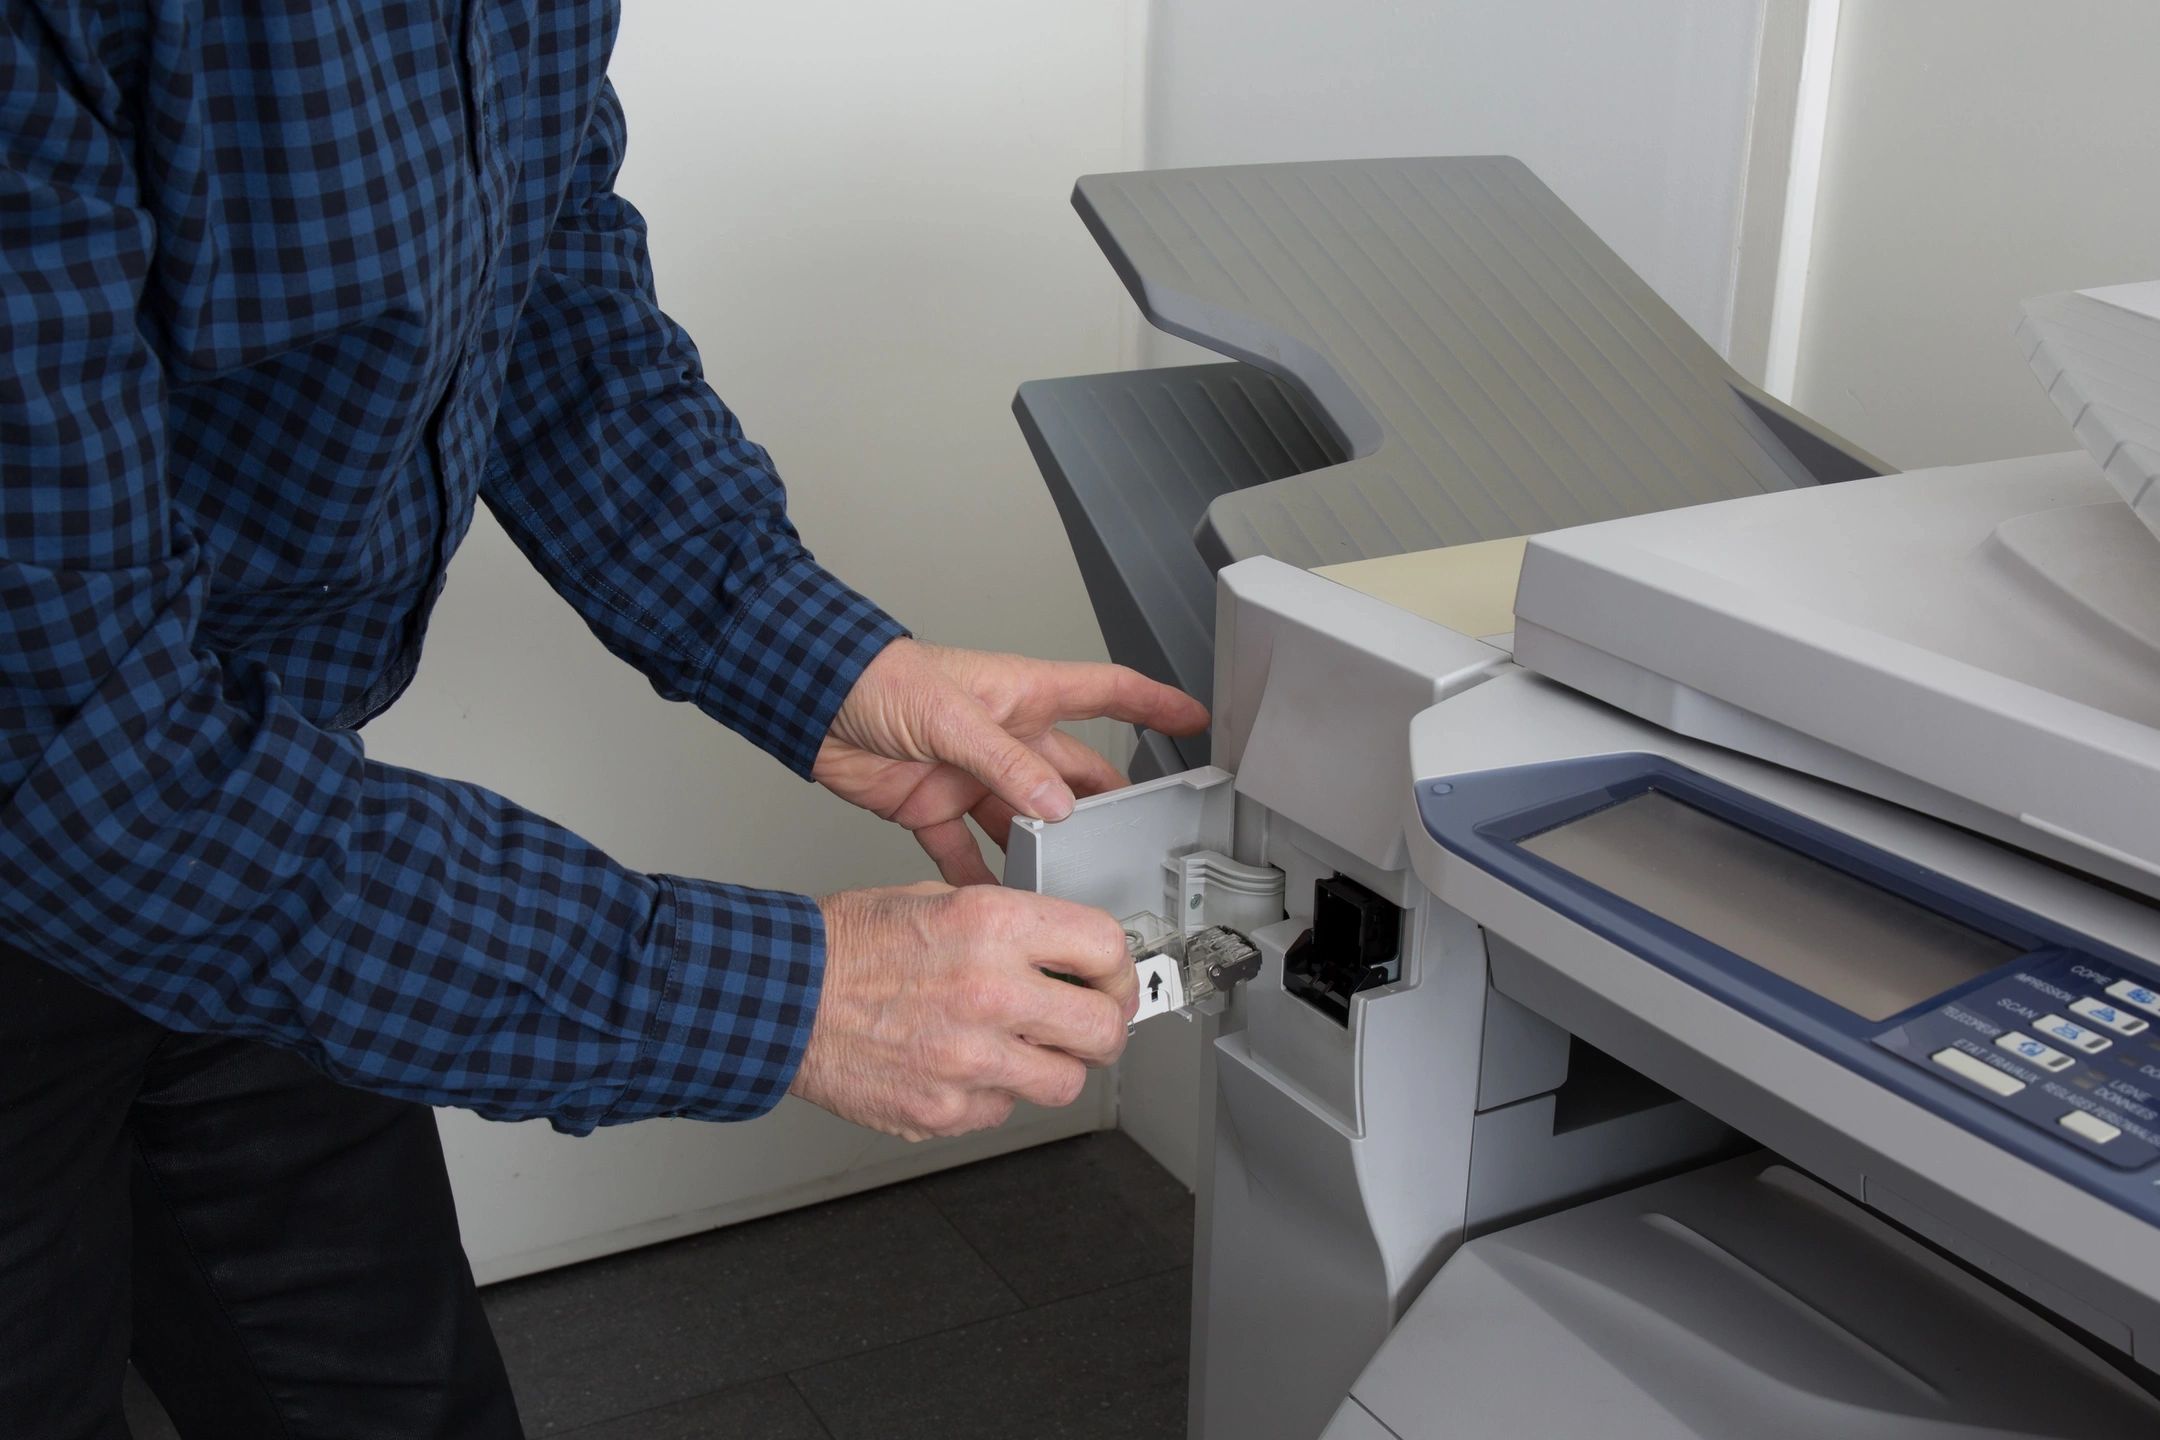 Customer needs laser printer service and repair in Buckeye Arizona